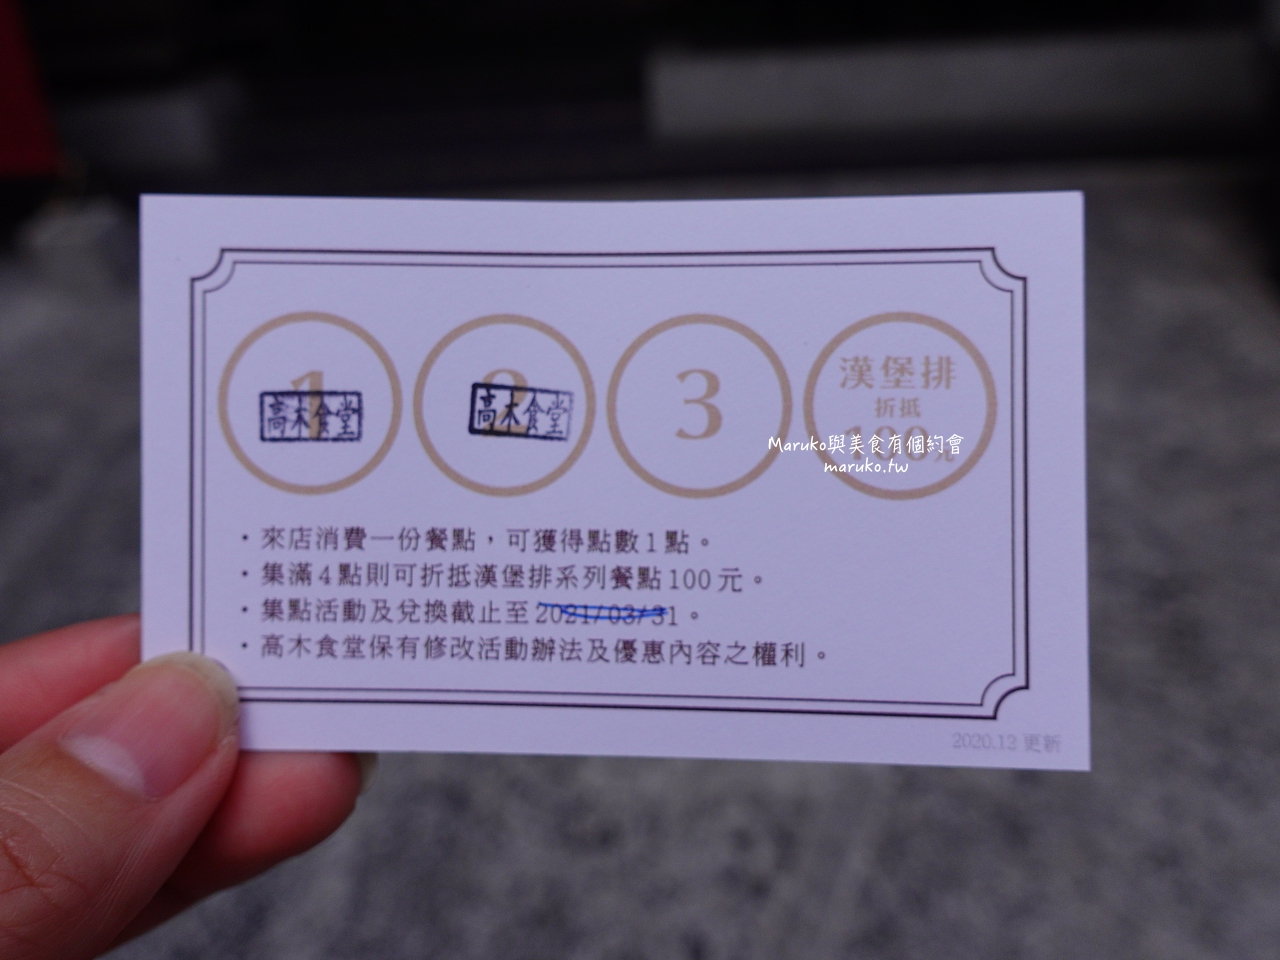 【台北】高木食堂/午間限定和牛定食只要250元起/忠孝敦化站美食 @Maruko與美食有個約會